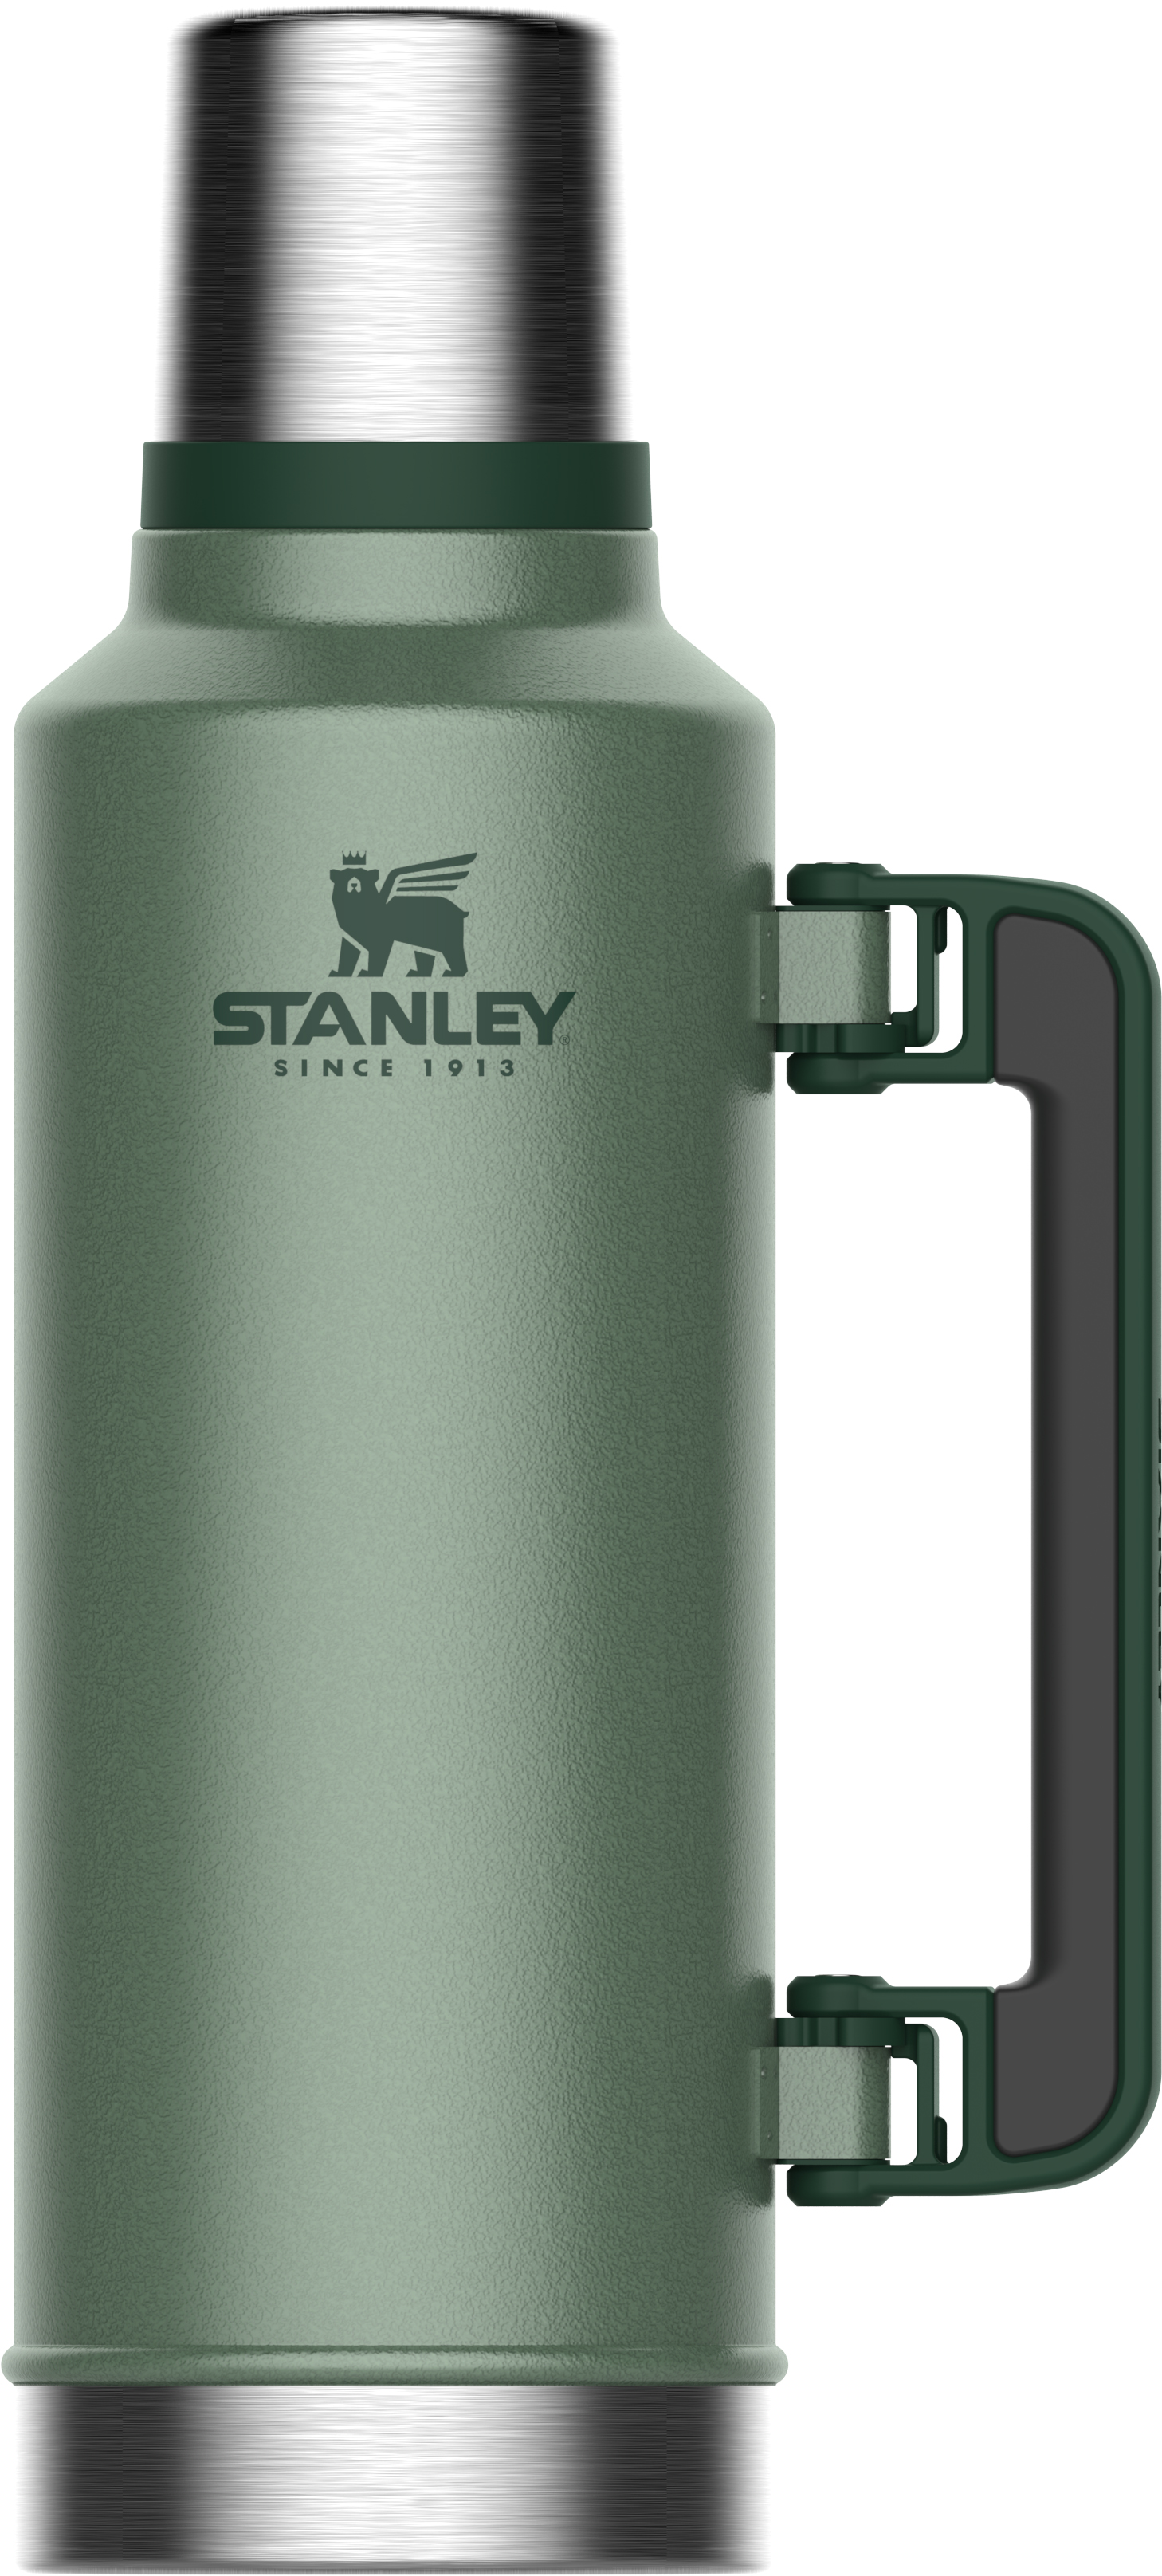  Stanley Classic Legendary Bottle 1.9L / 2.0QT